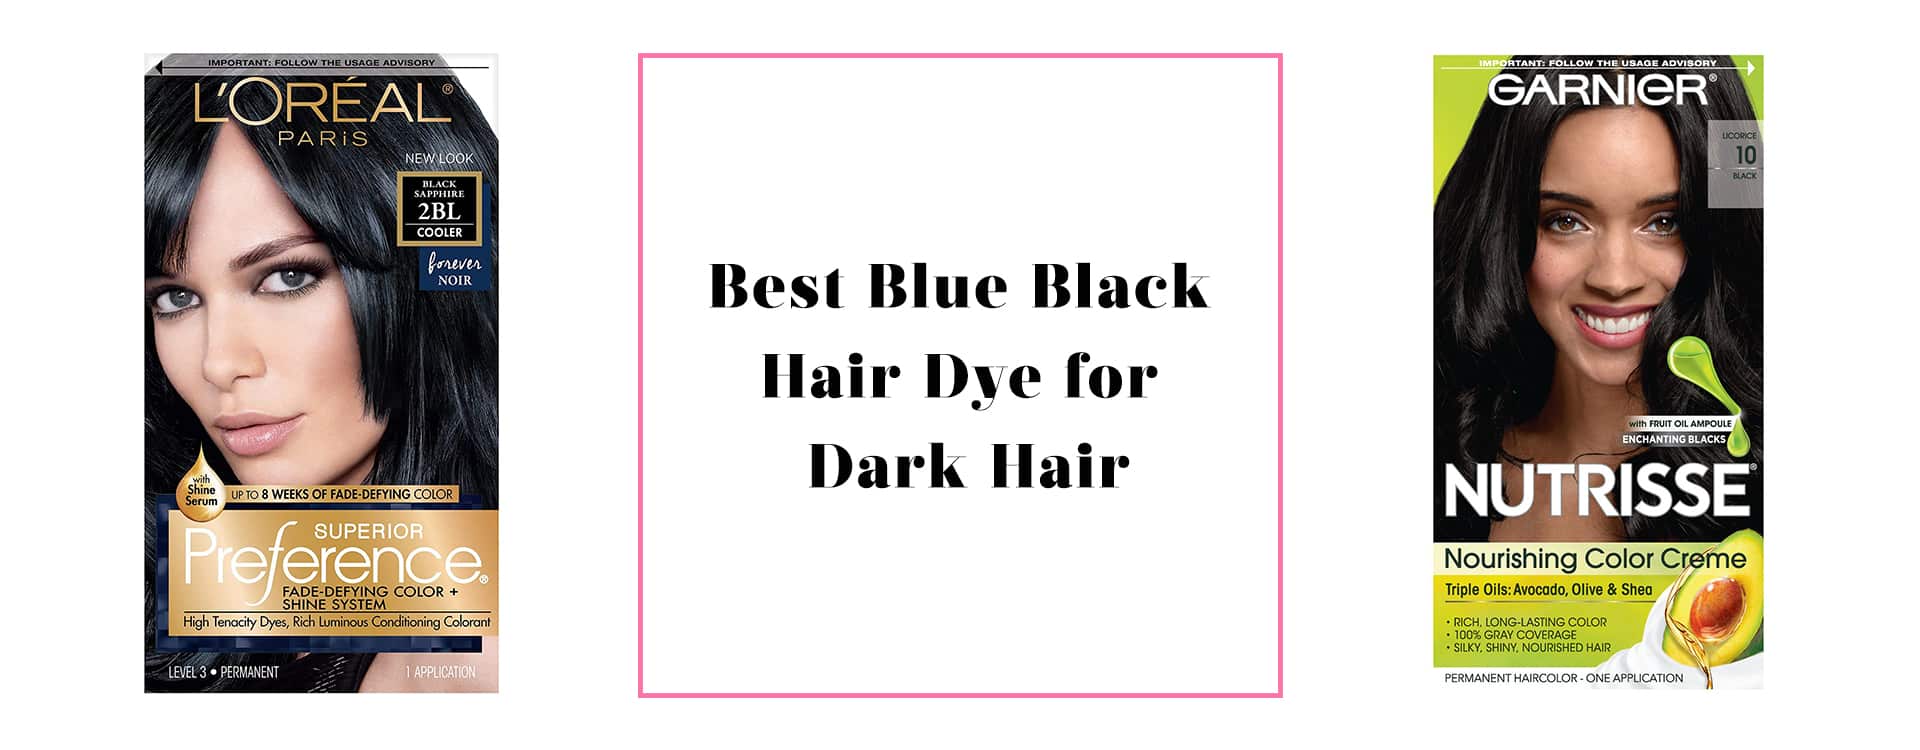 Best Blue Black Hair Dye for Dark Hair feature